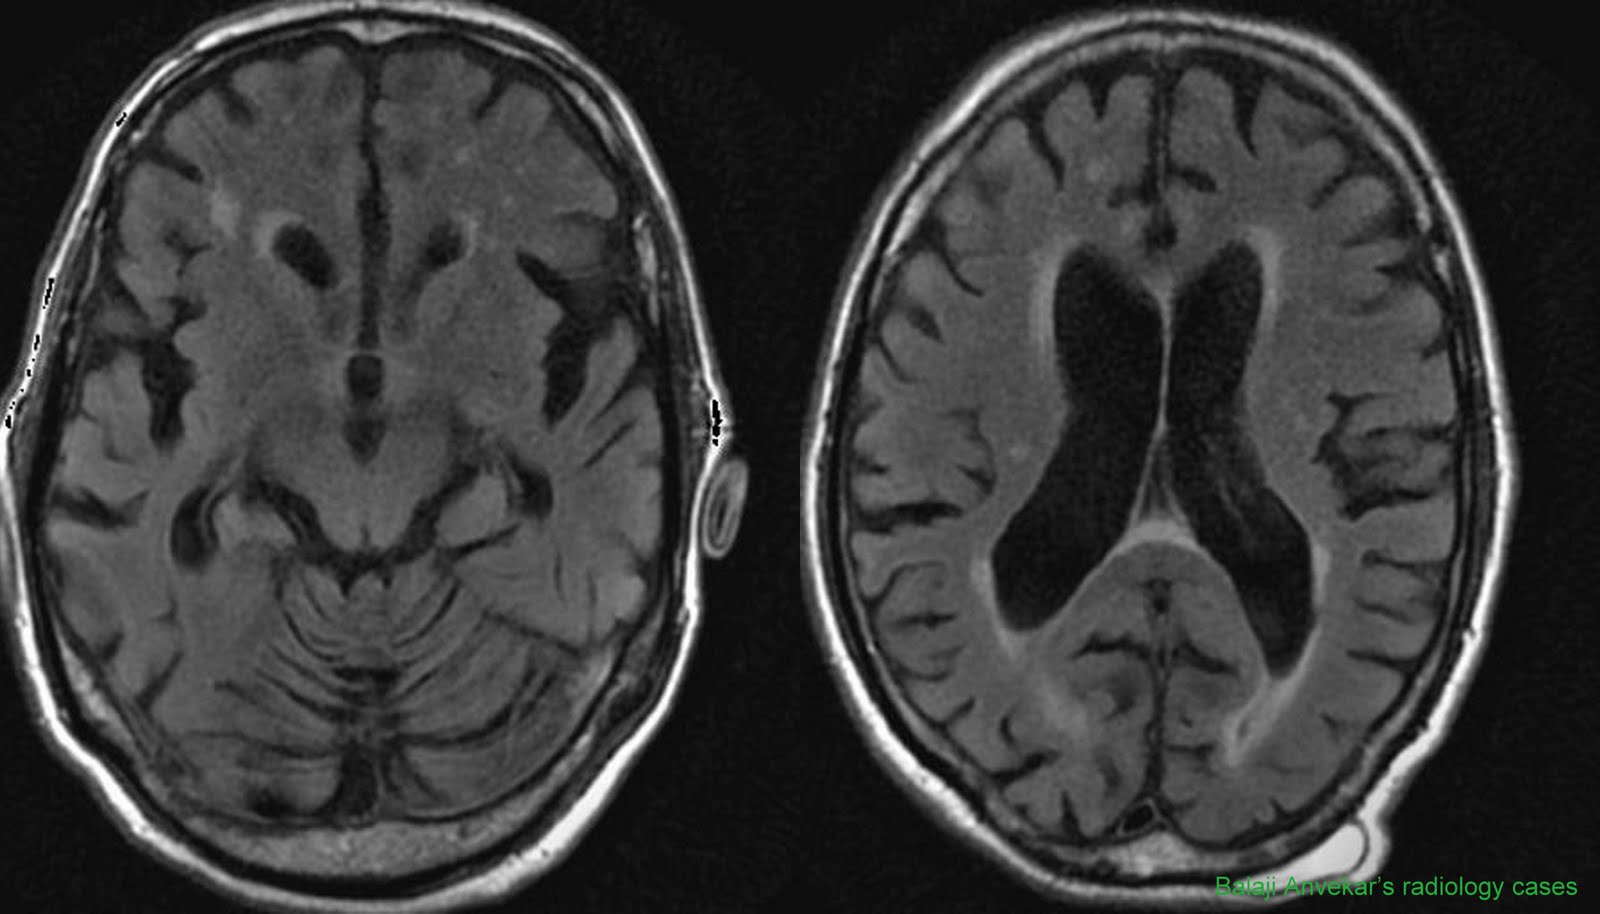 Brain Bleed: Brain Bleed And Dementia